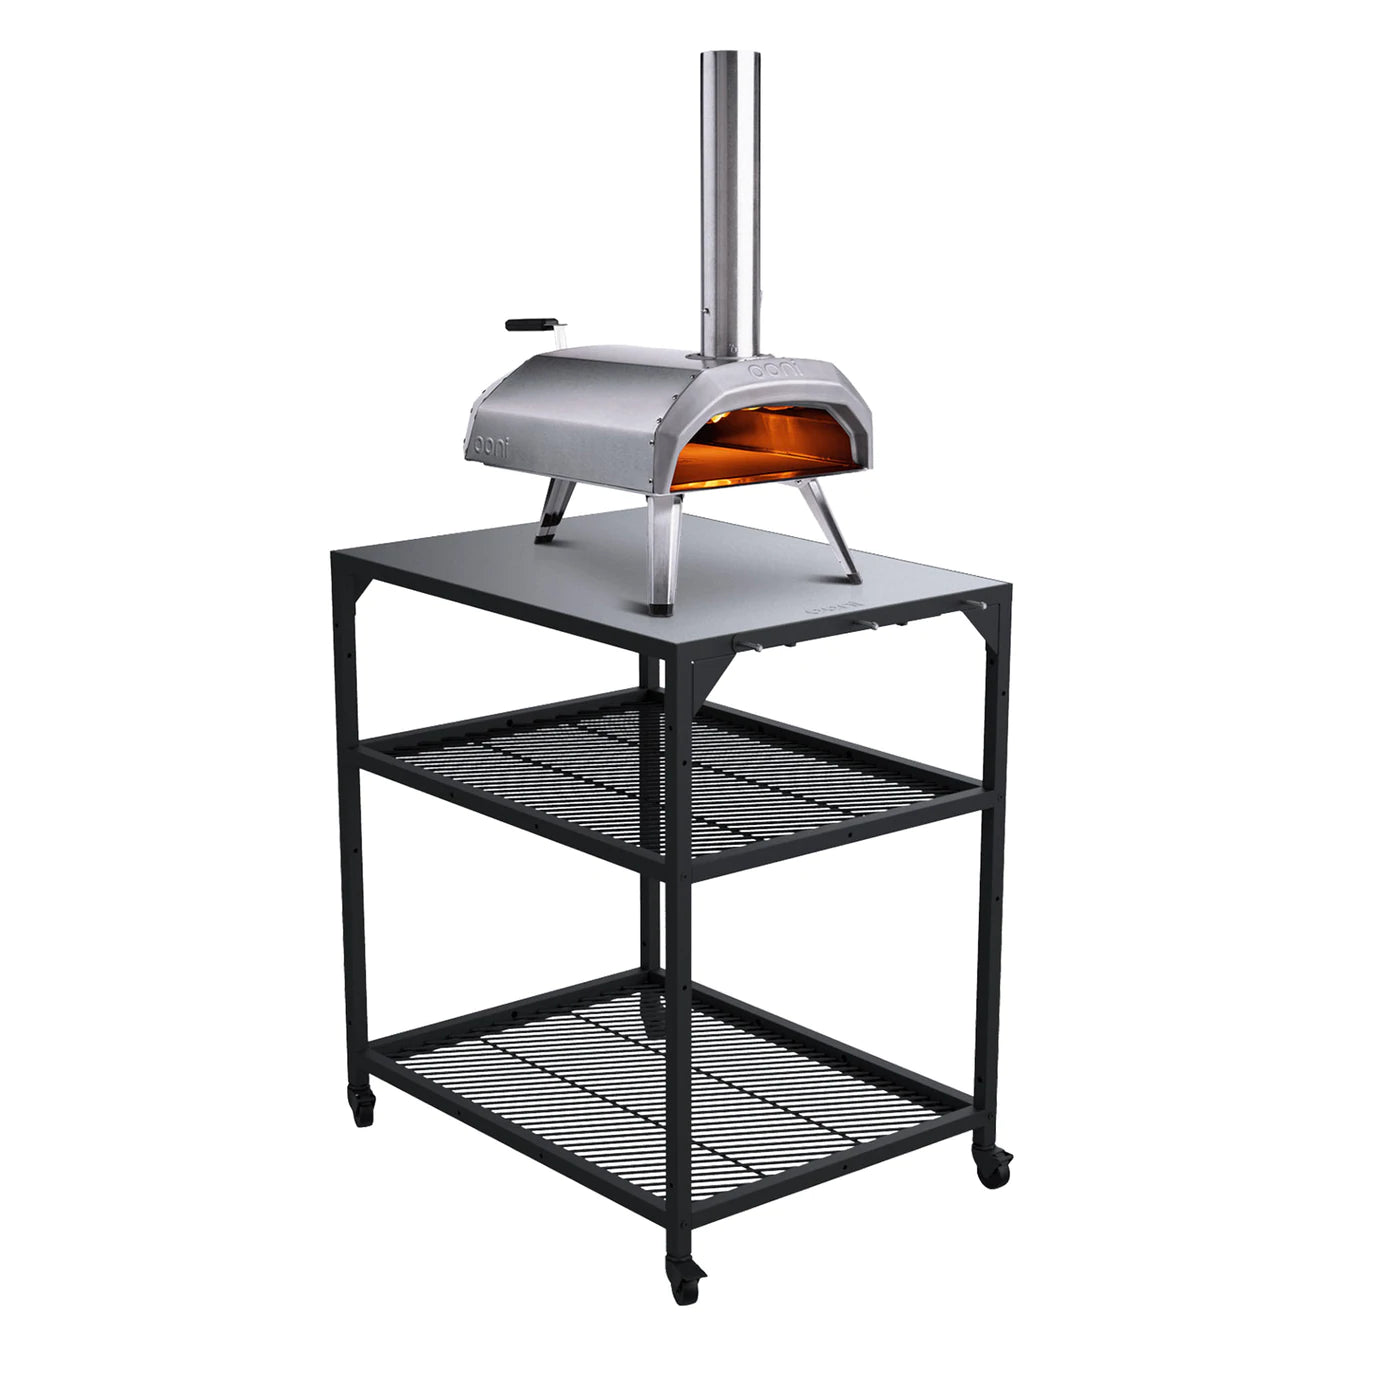 Table inox modulaire Ooni - Taille moyenne    - Ooni - Module de cuisine extérieur - 